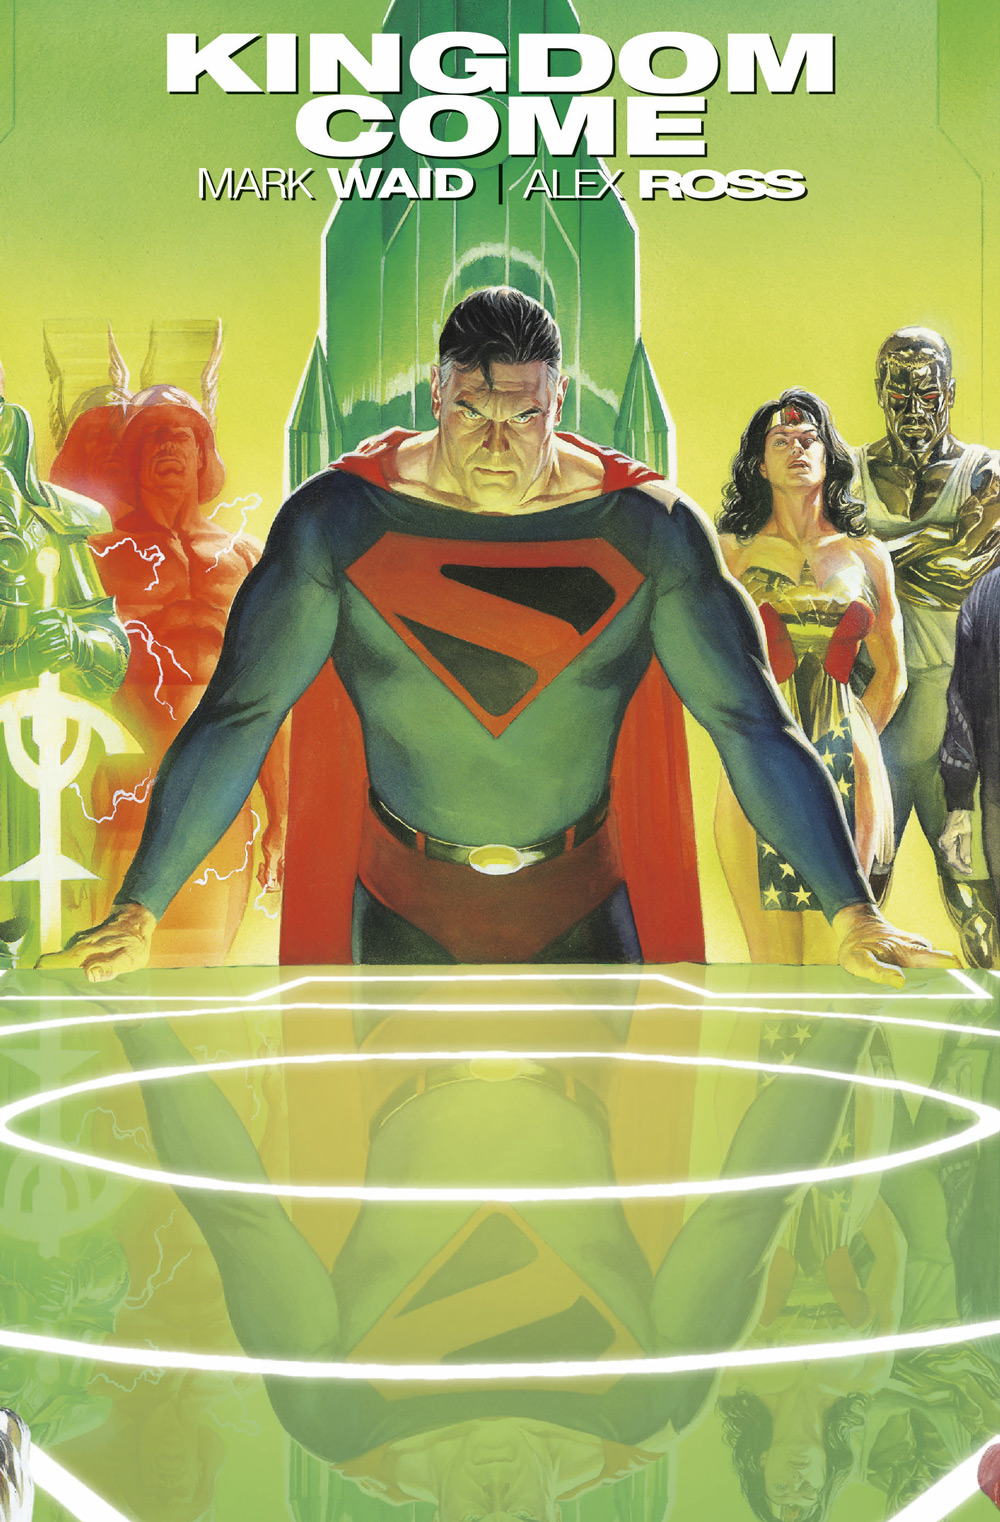 cómo kingdom come se convirtió en una de las historias más influyentes de superman